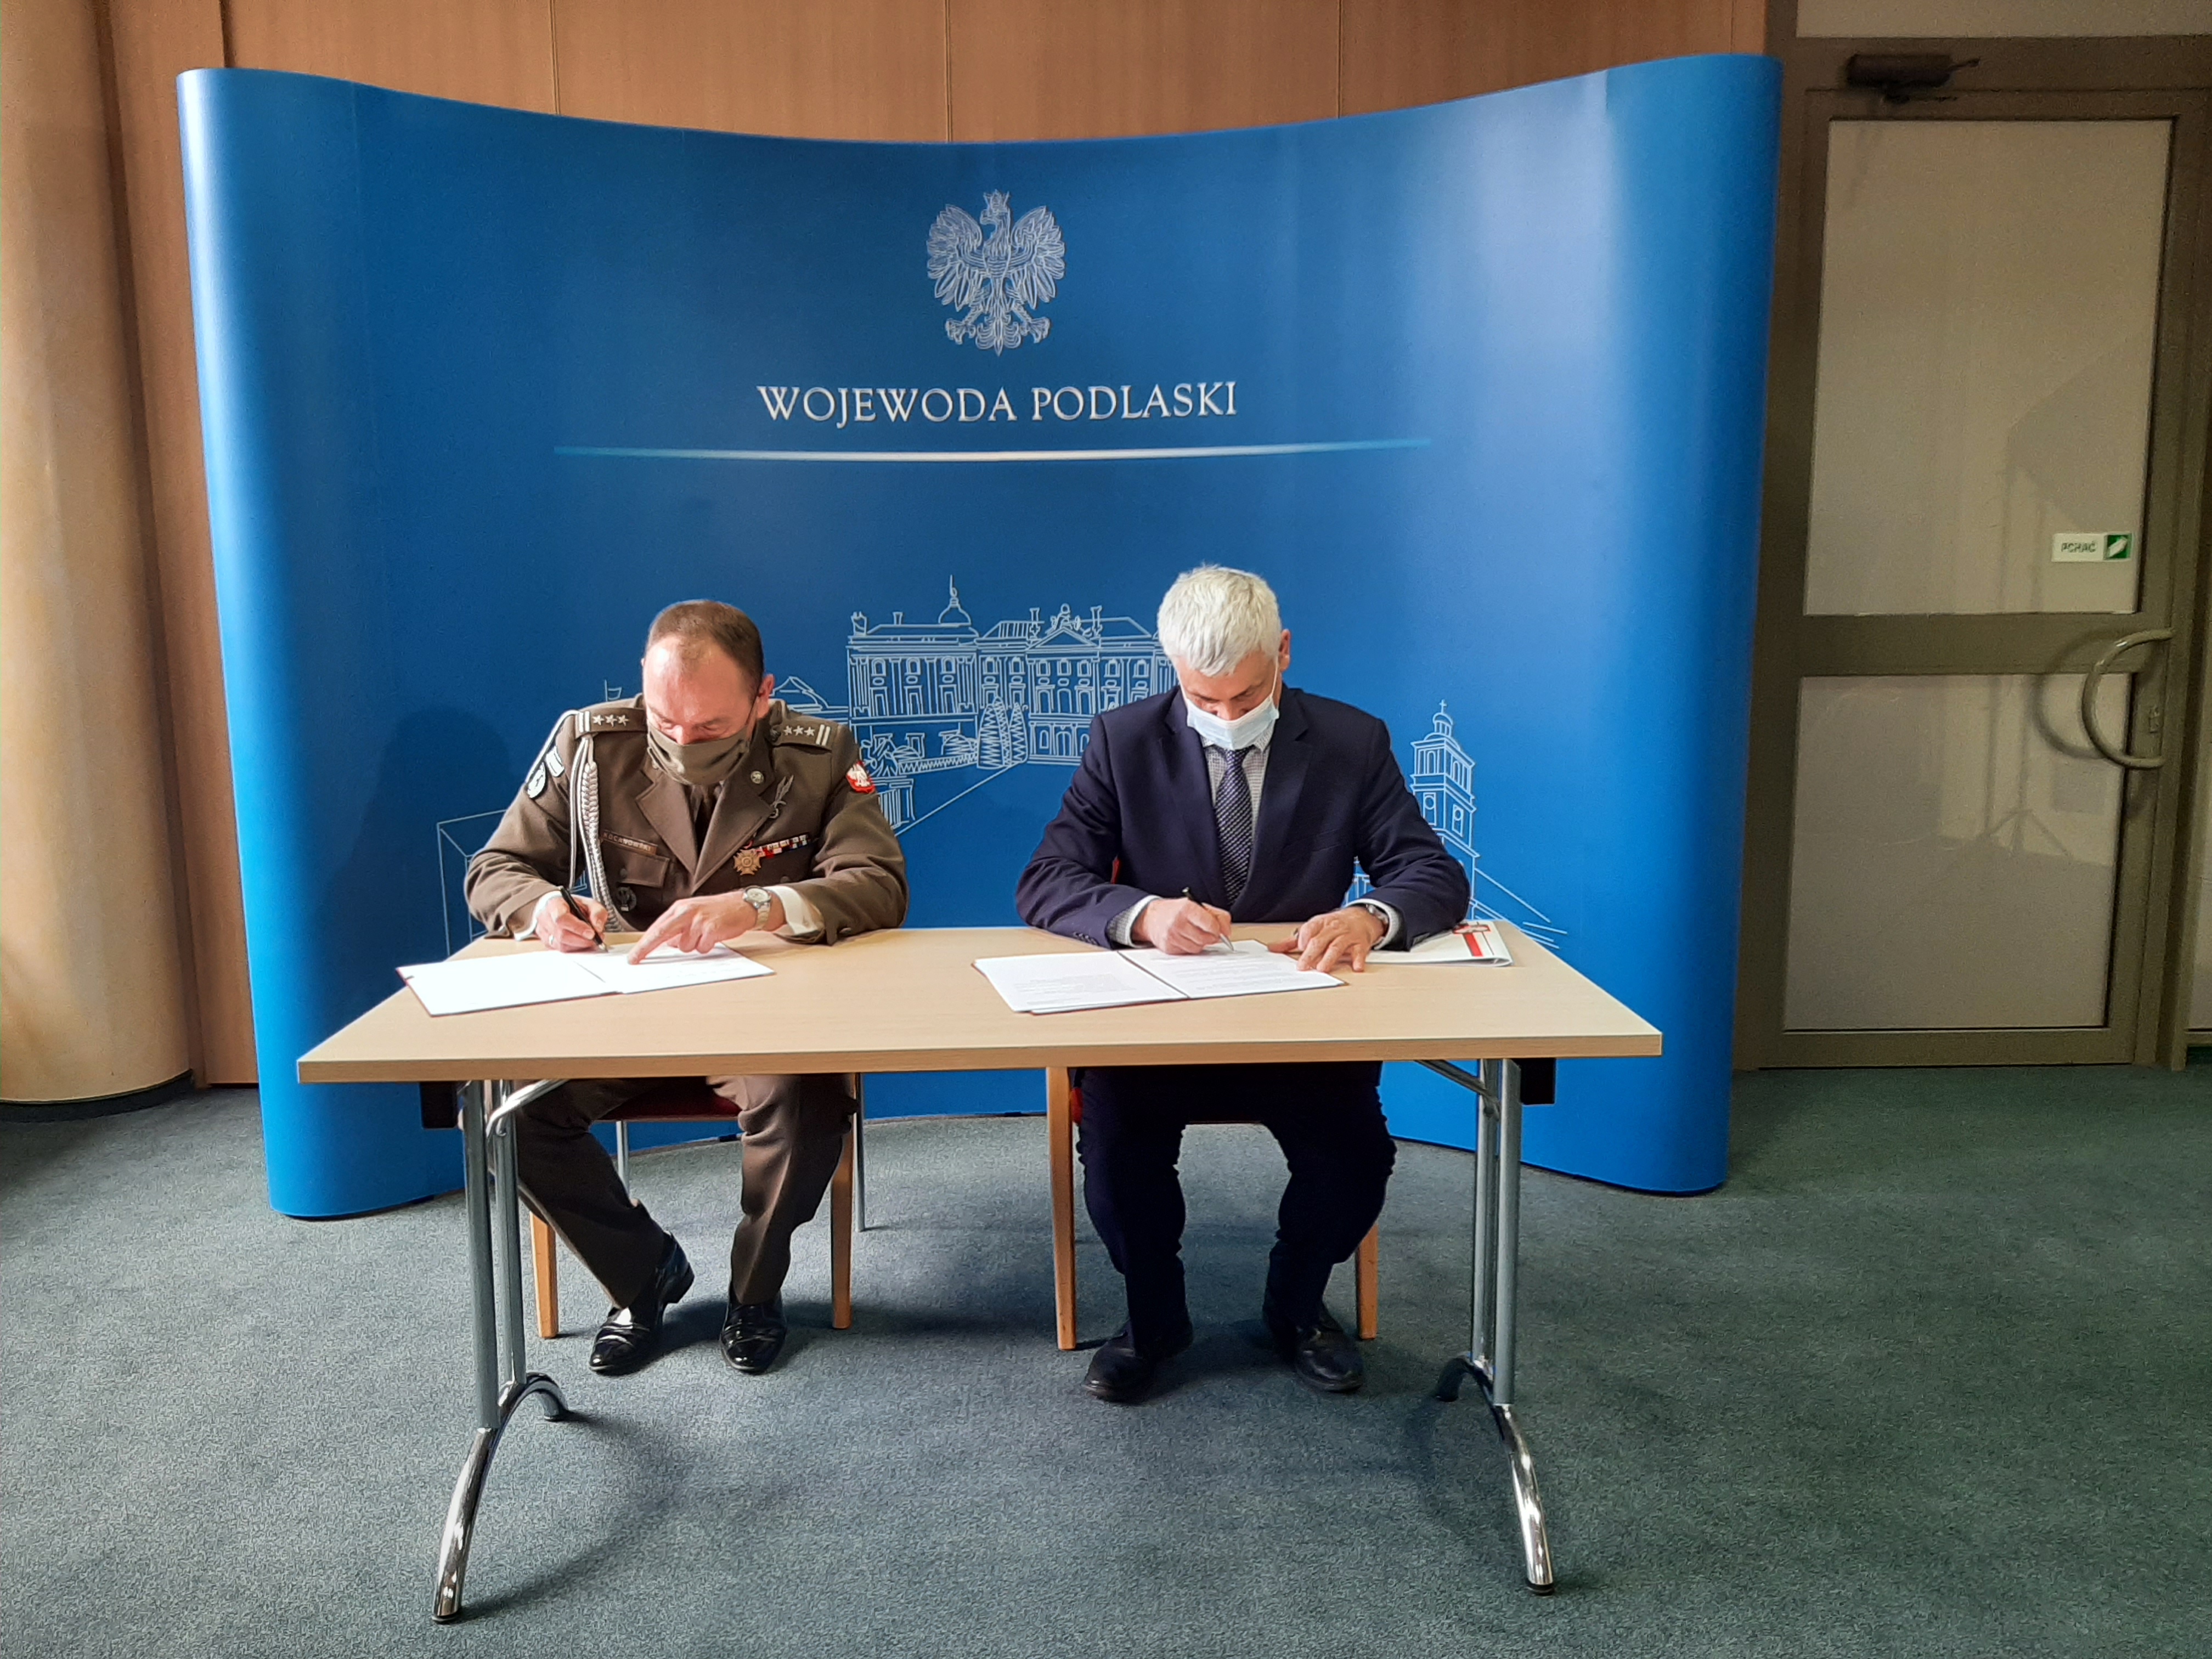 Dwóch mężczyzn siedzi przy stole, pochyleni podpisują umowę. Za nimi znajduje się niebieska ścianka Podlaskiego Urzędu Wojewódzkiego